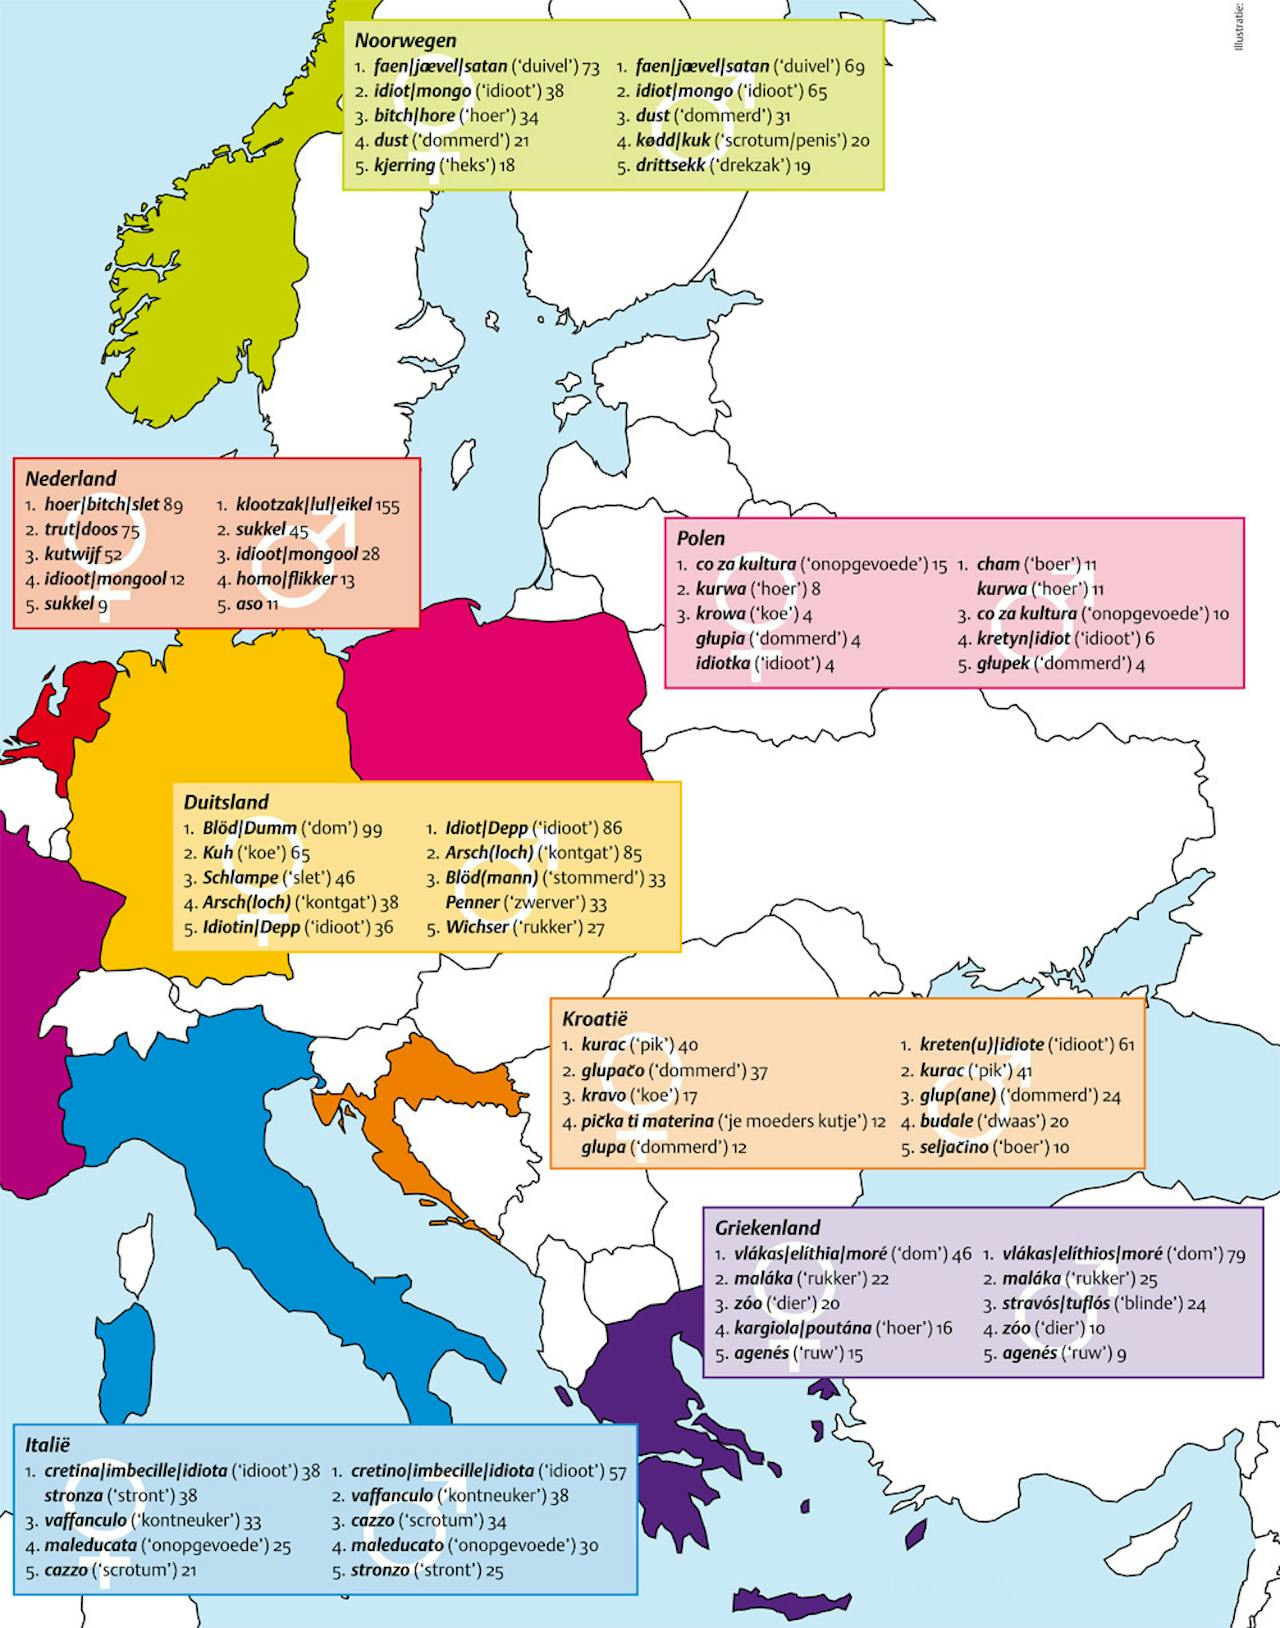 Een landkaart met scheldwoorden van de landen Noorwegen, Nederland, Polen, Duitsland, Kroatië, Griekenland en Italië. De scheldwoorden staan genoteerd in gekleurde tekstblokken.